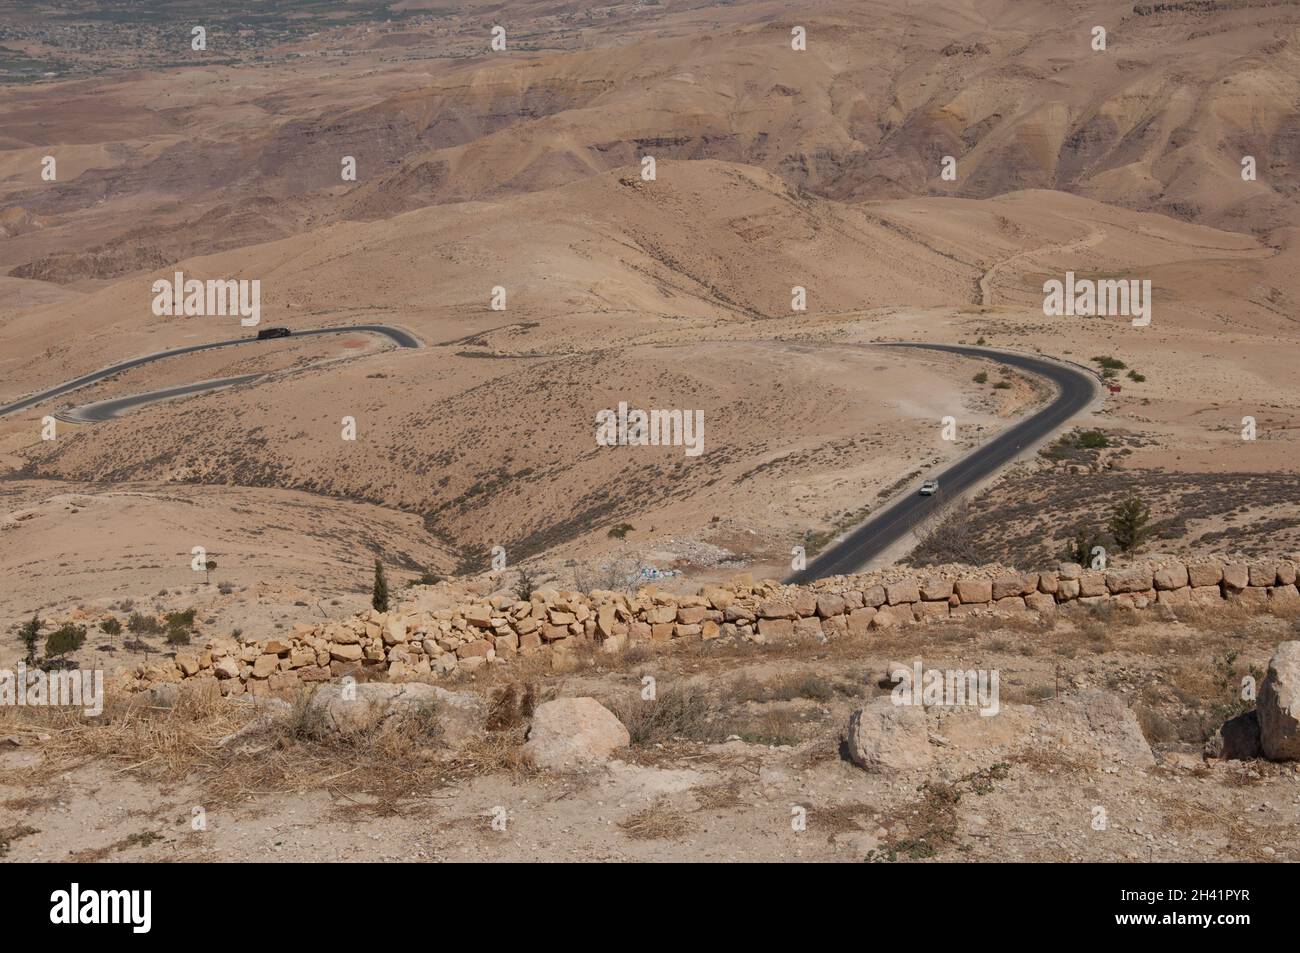 Vue depuis le mont Nebo, la Jordanie et le Moyen-Orient. Peu de végétation, terre sèche. Moïse est censé avoir vu la terre promise d'ici et est mort sur le M. Banque D'Images